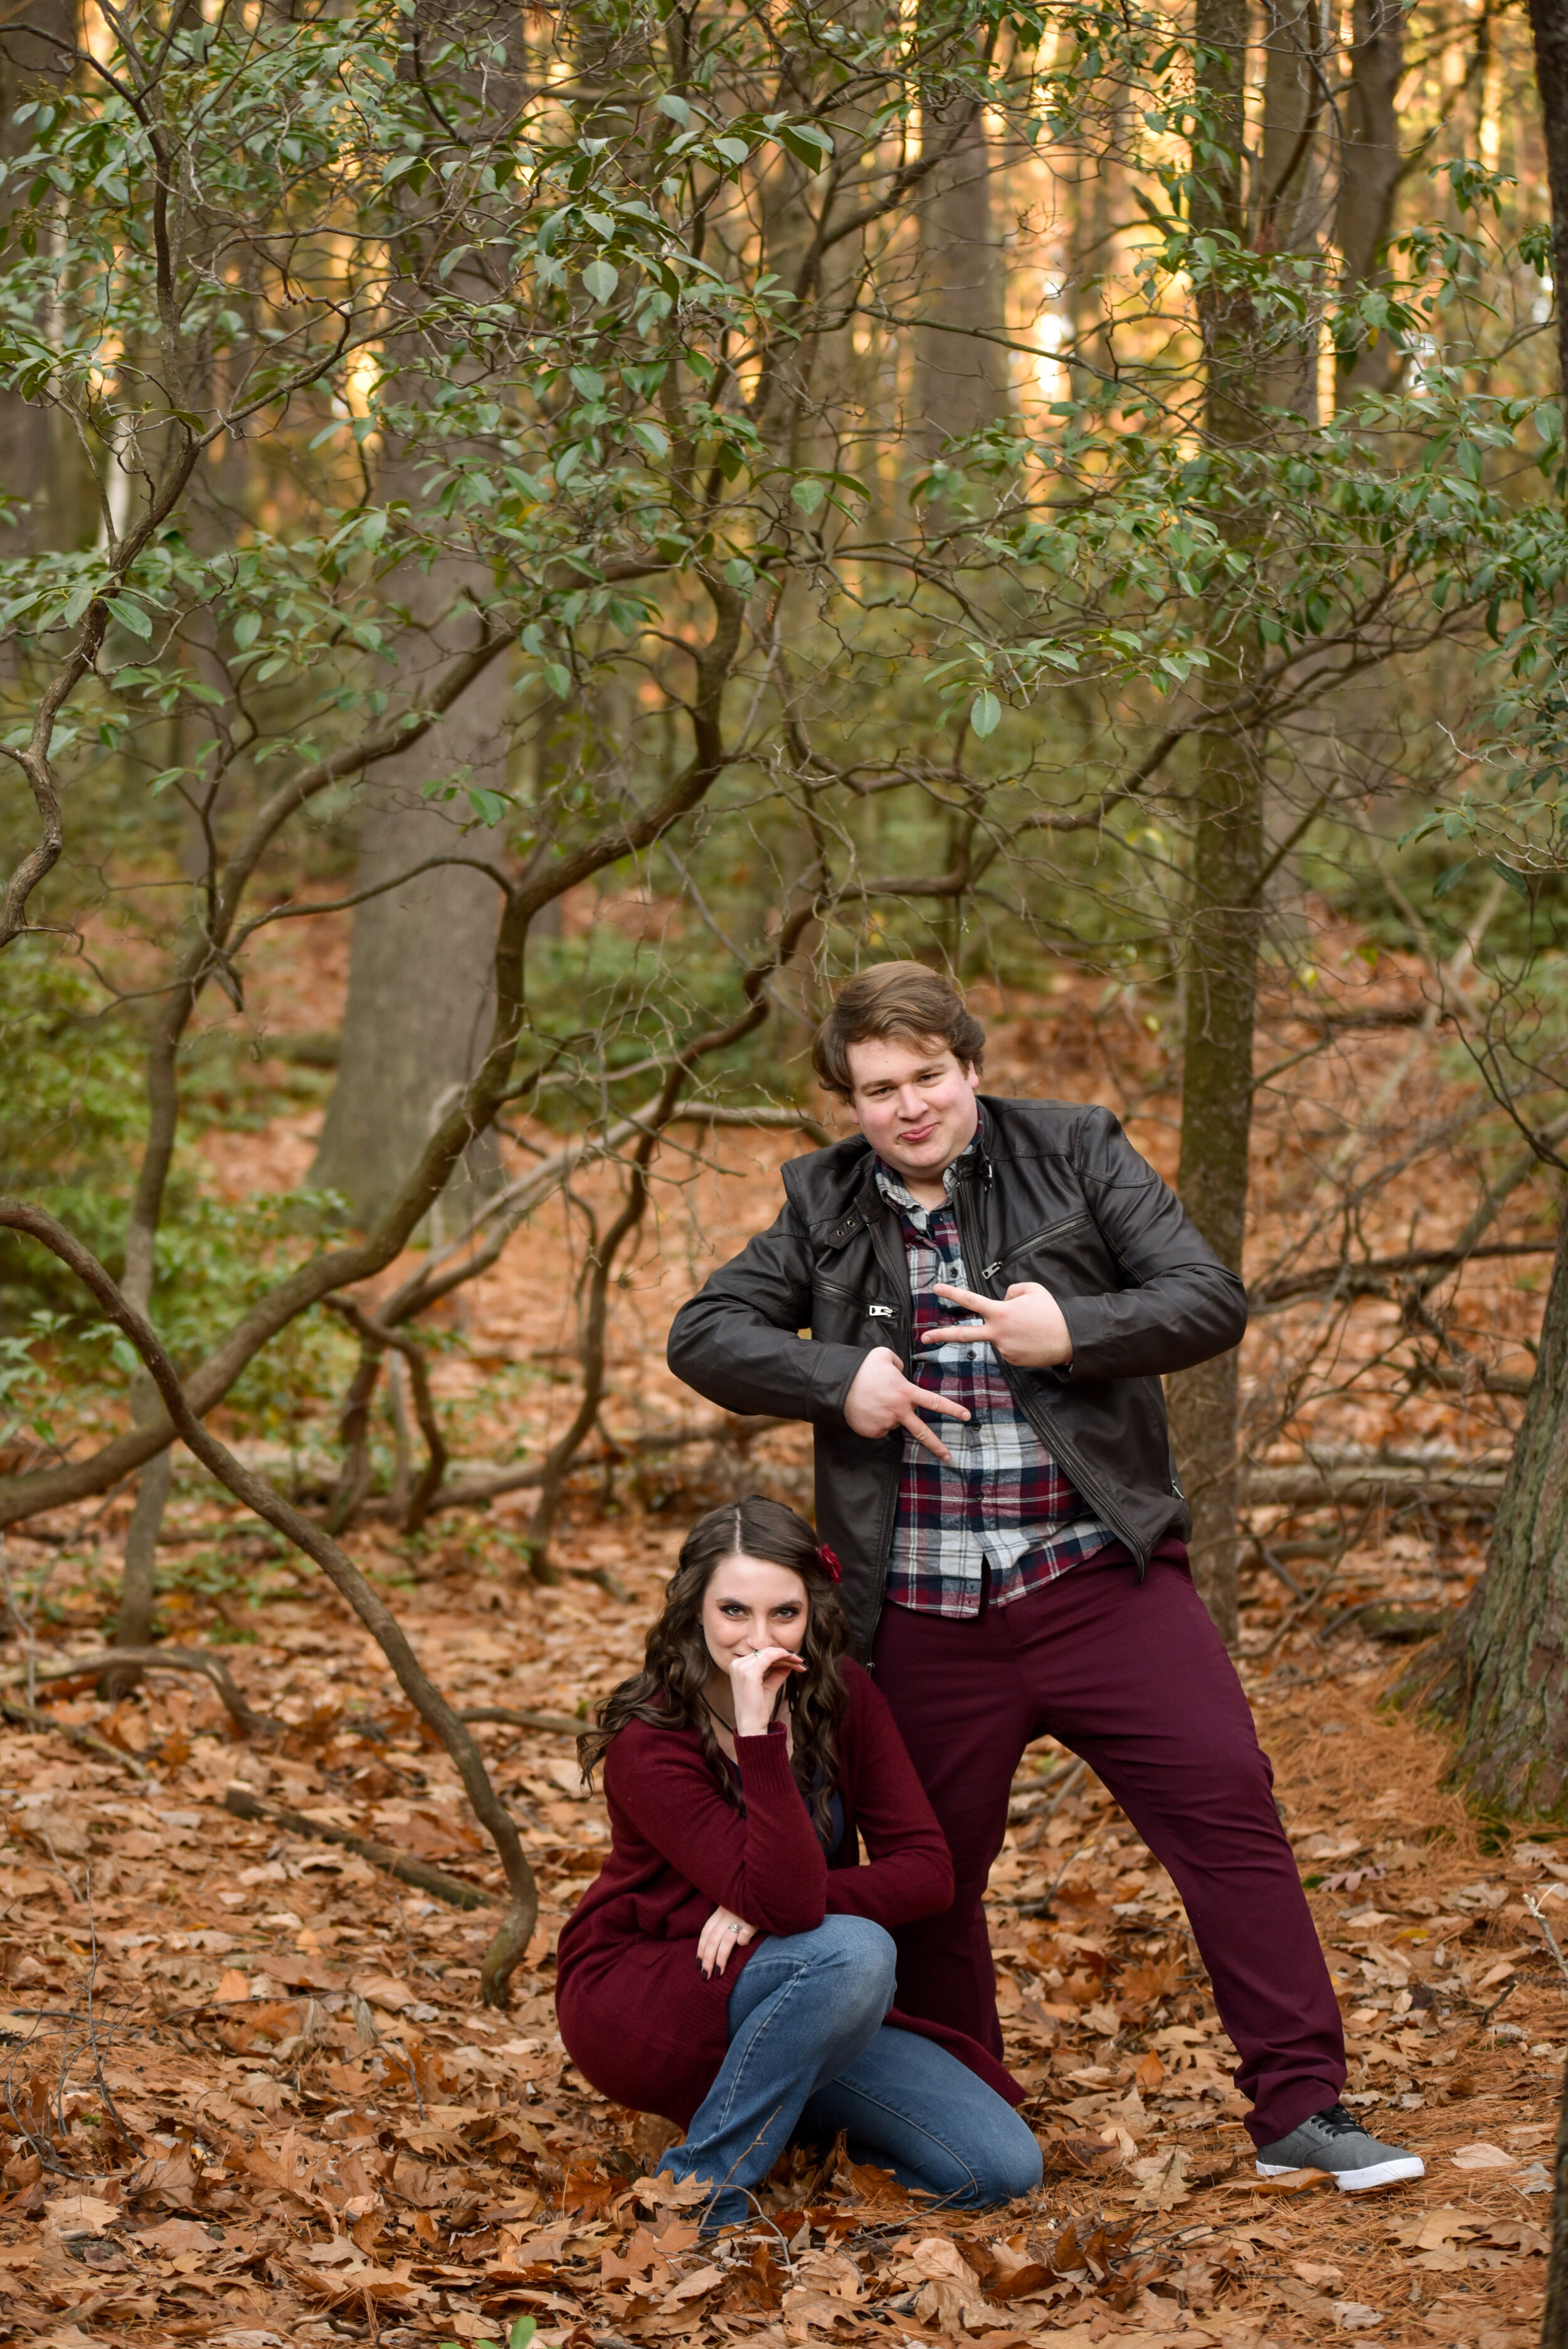 Meg and Anthony engagement photoshoot at Coggshall Park, Fitchburg, MA photographed by Kara Emily Krantz Photography